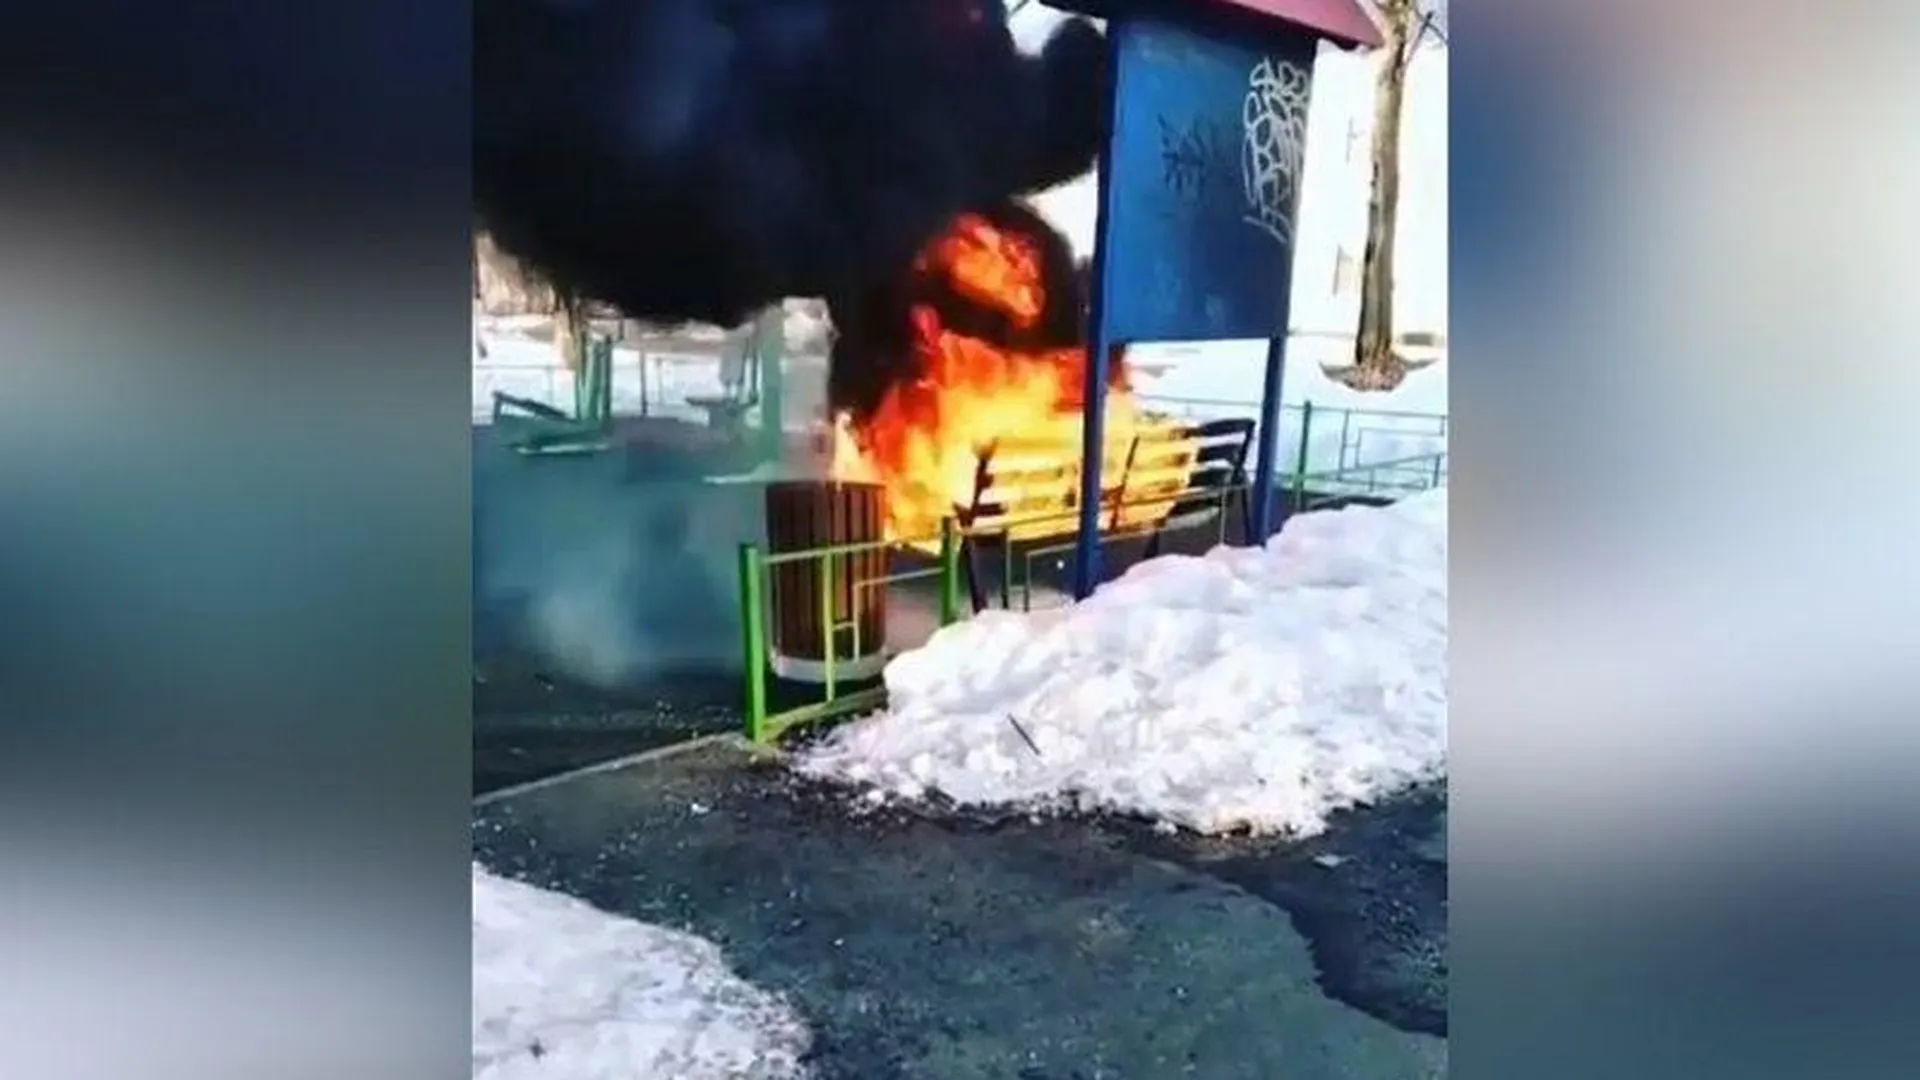 Хулиганы устроили пожар на площадке воркаута в Орехово-Зуево